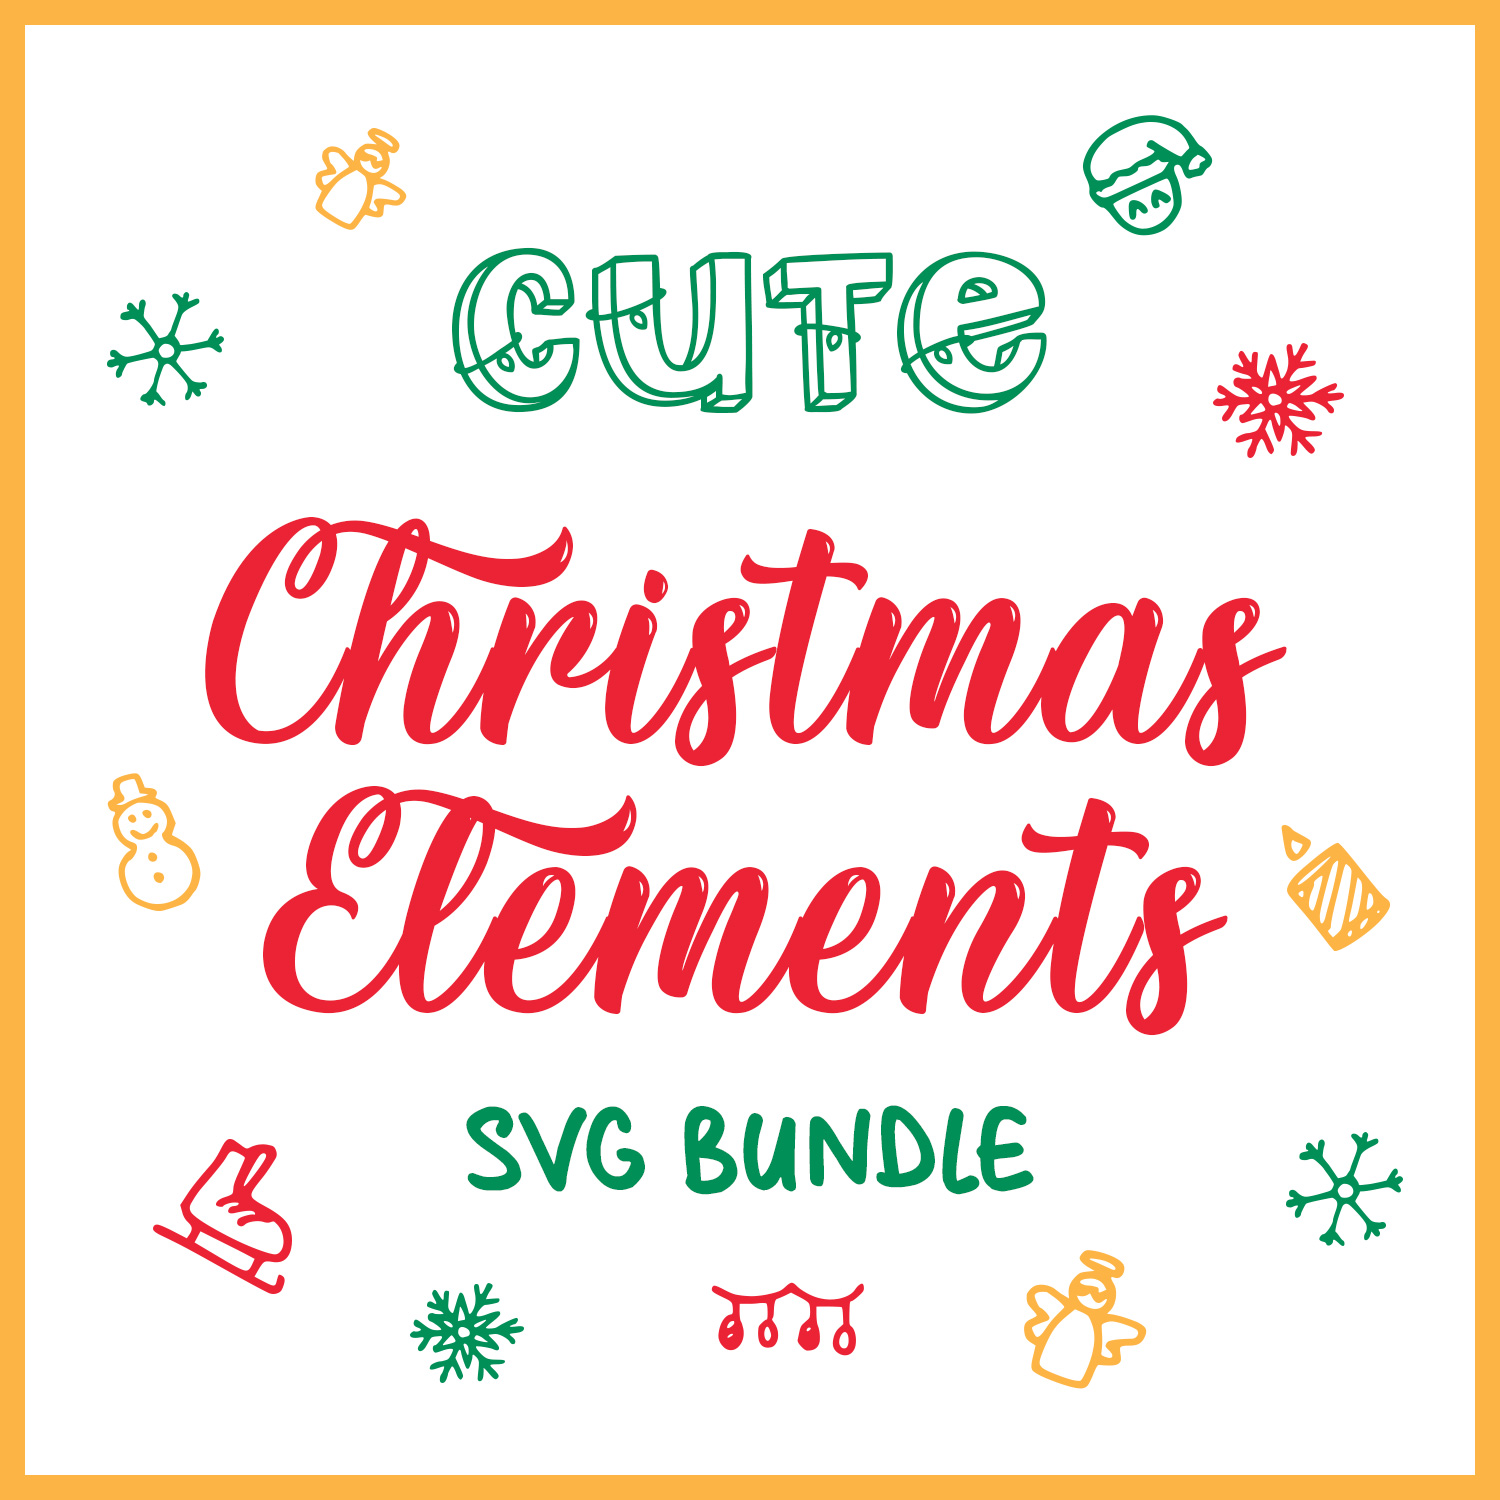 Cute Christmas Elements SVG Bundle cover image.